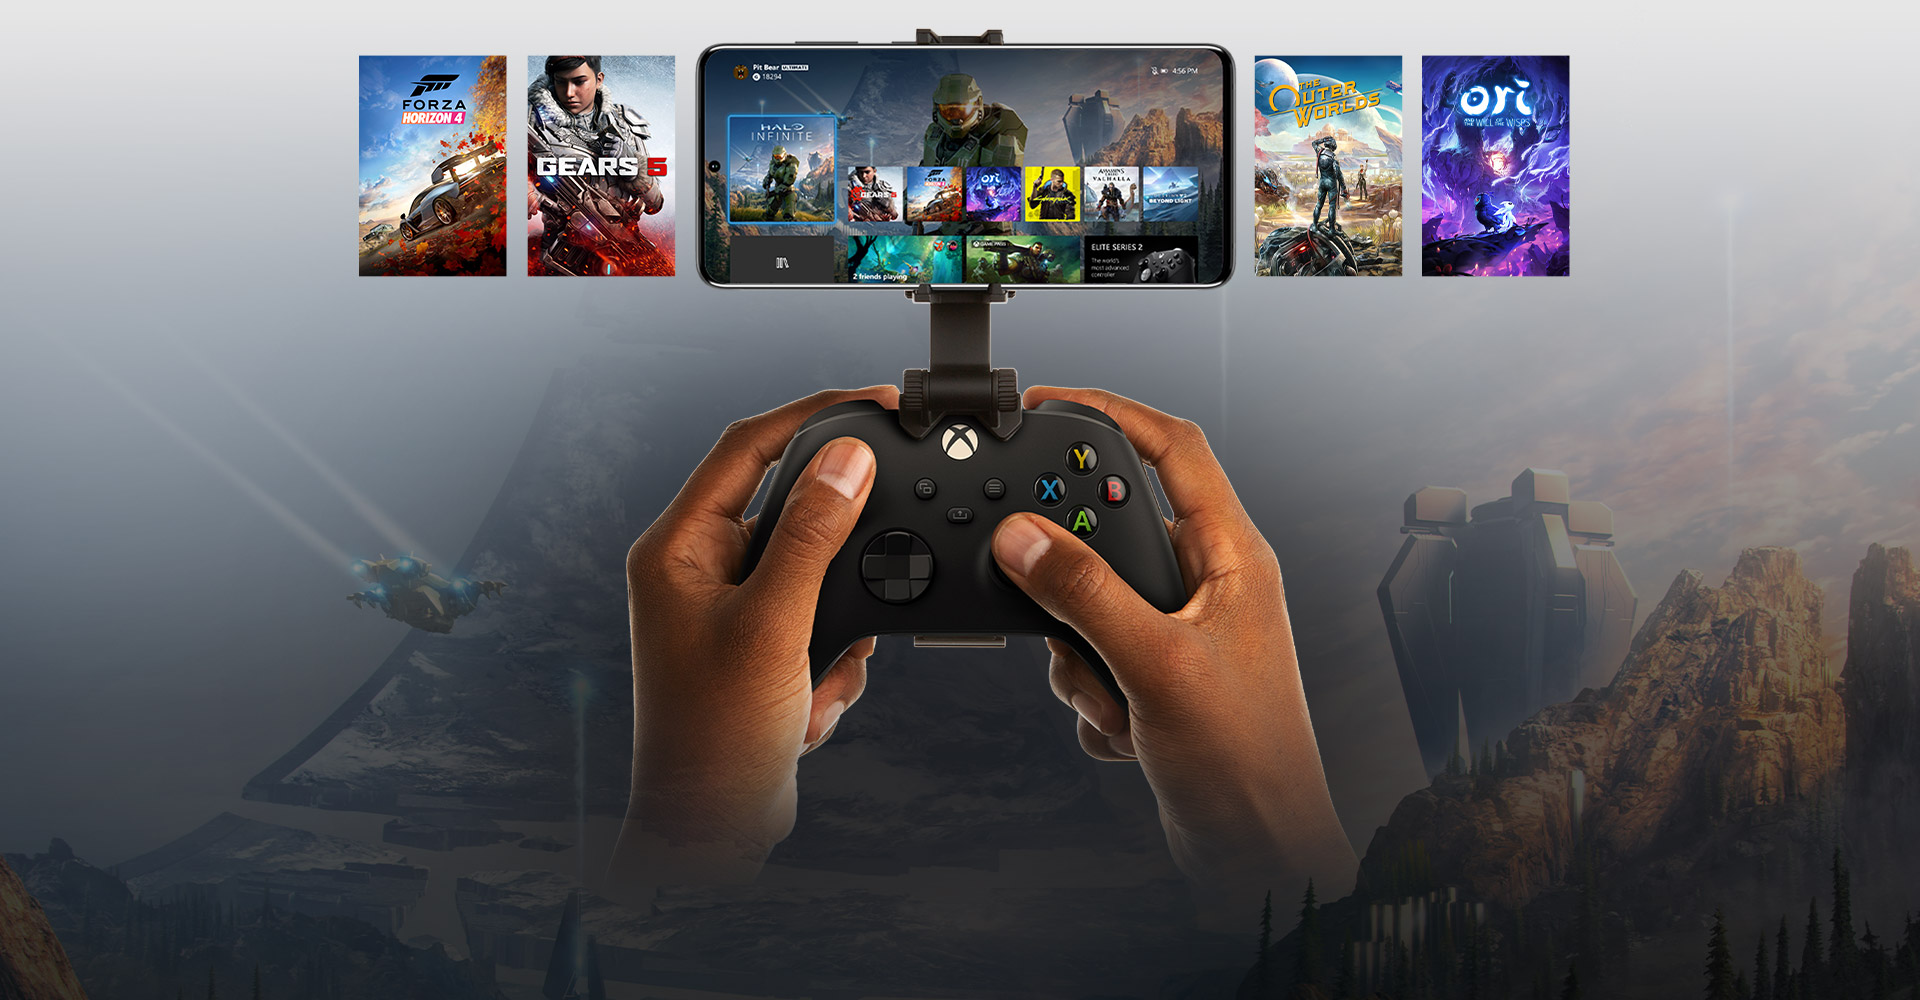 Dispositivo móvil conectado a un mando de Xbox, mostrando una selección de títulos para jugar. El mundo de Halo Infinite se extiende más allá del teléfono.